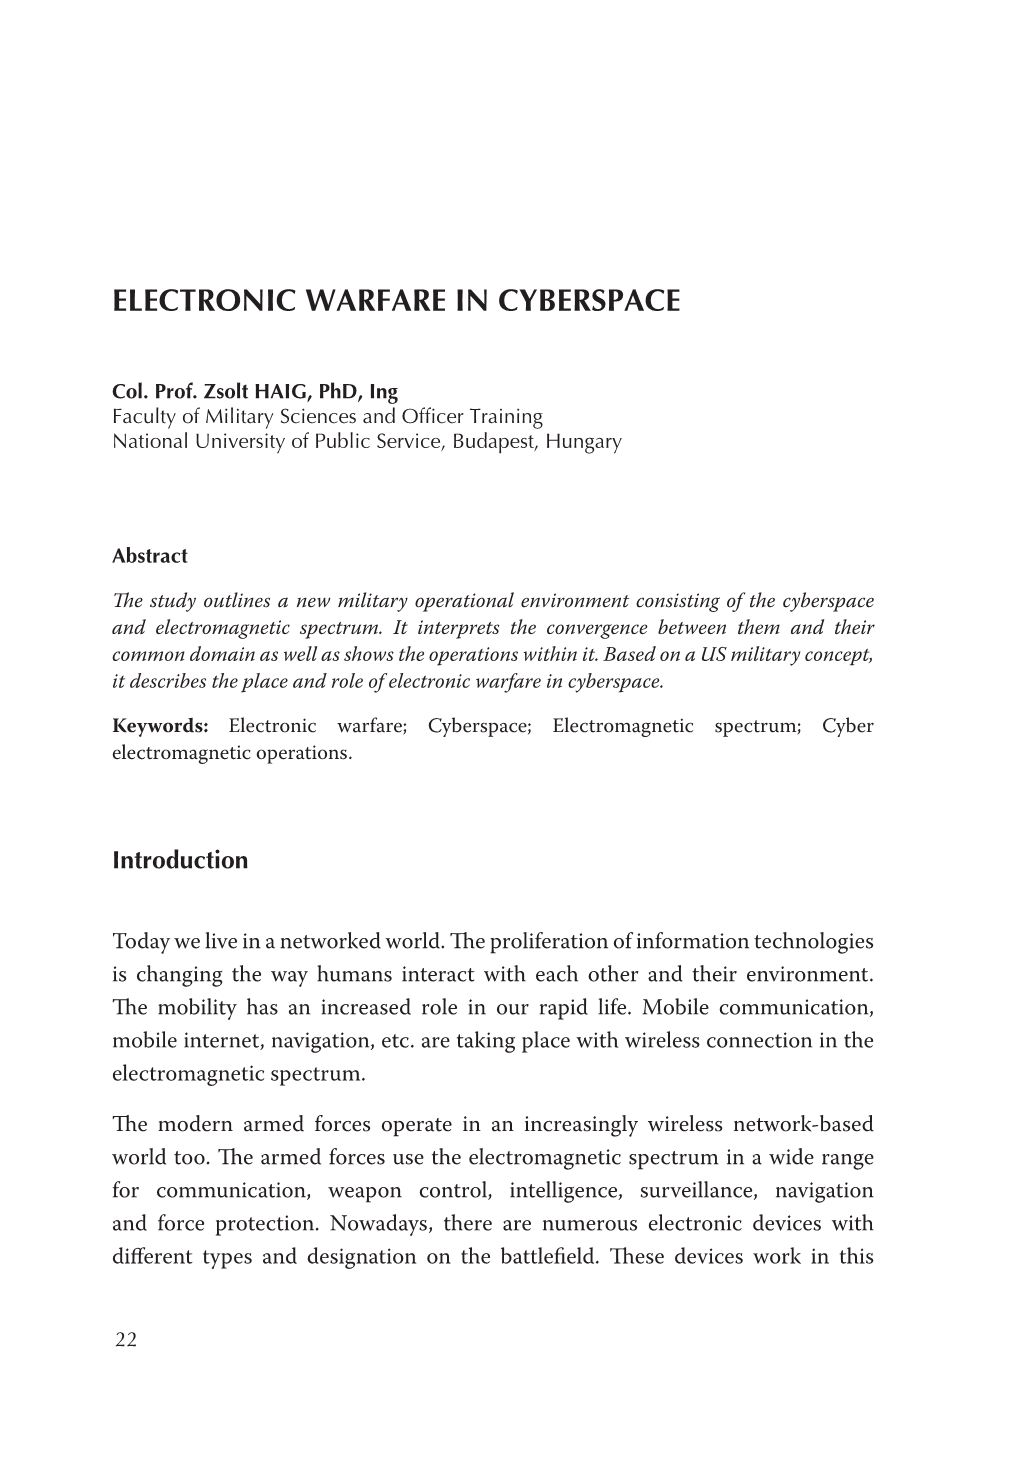 Electronic Warfare in Cyberspace